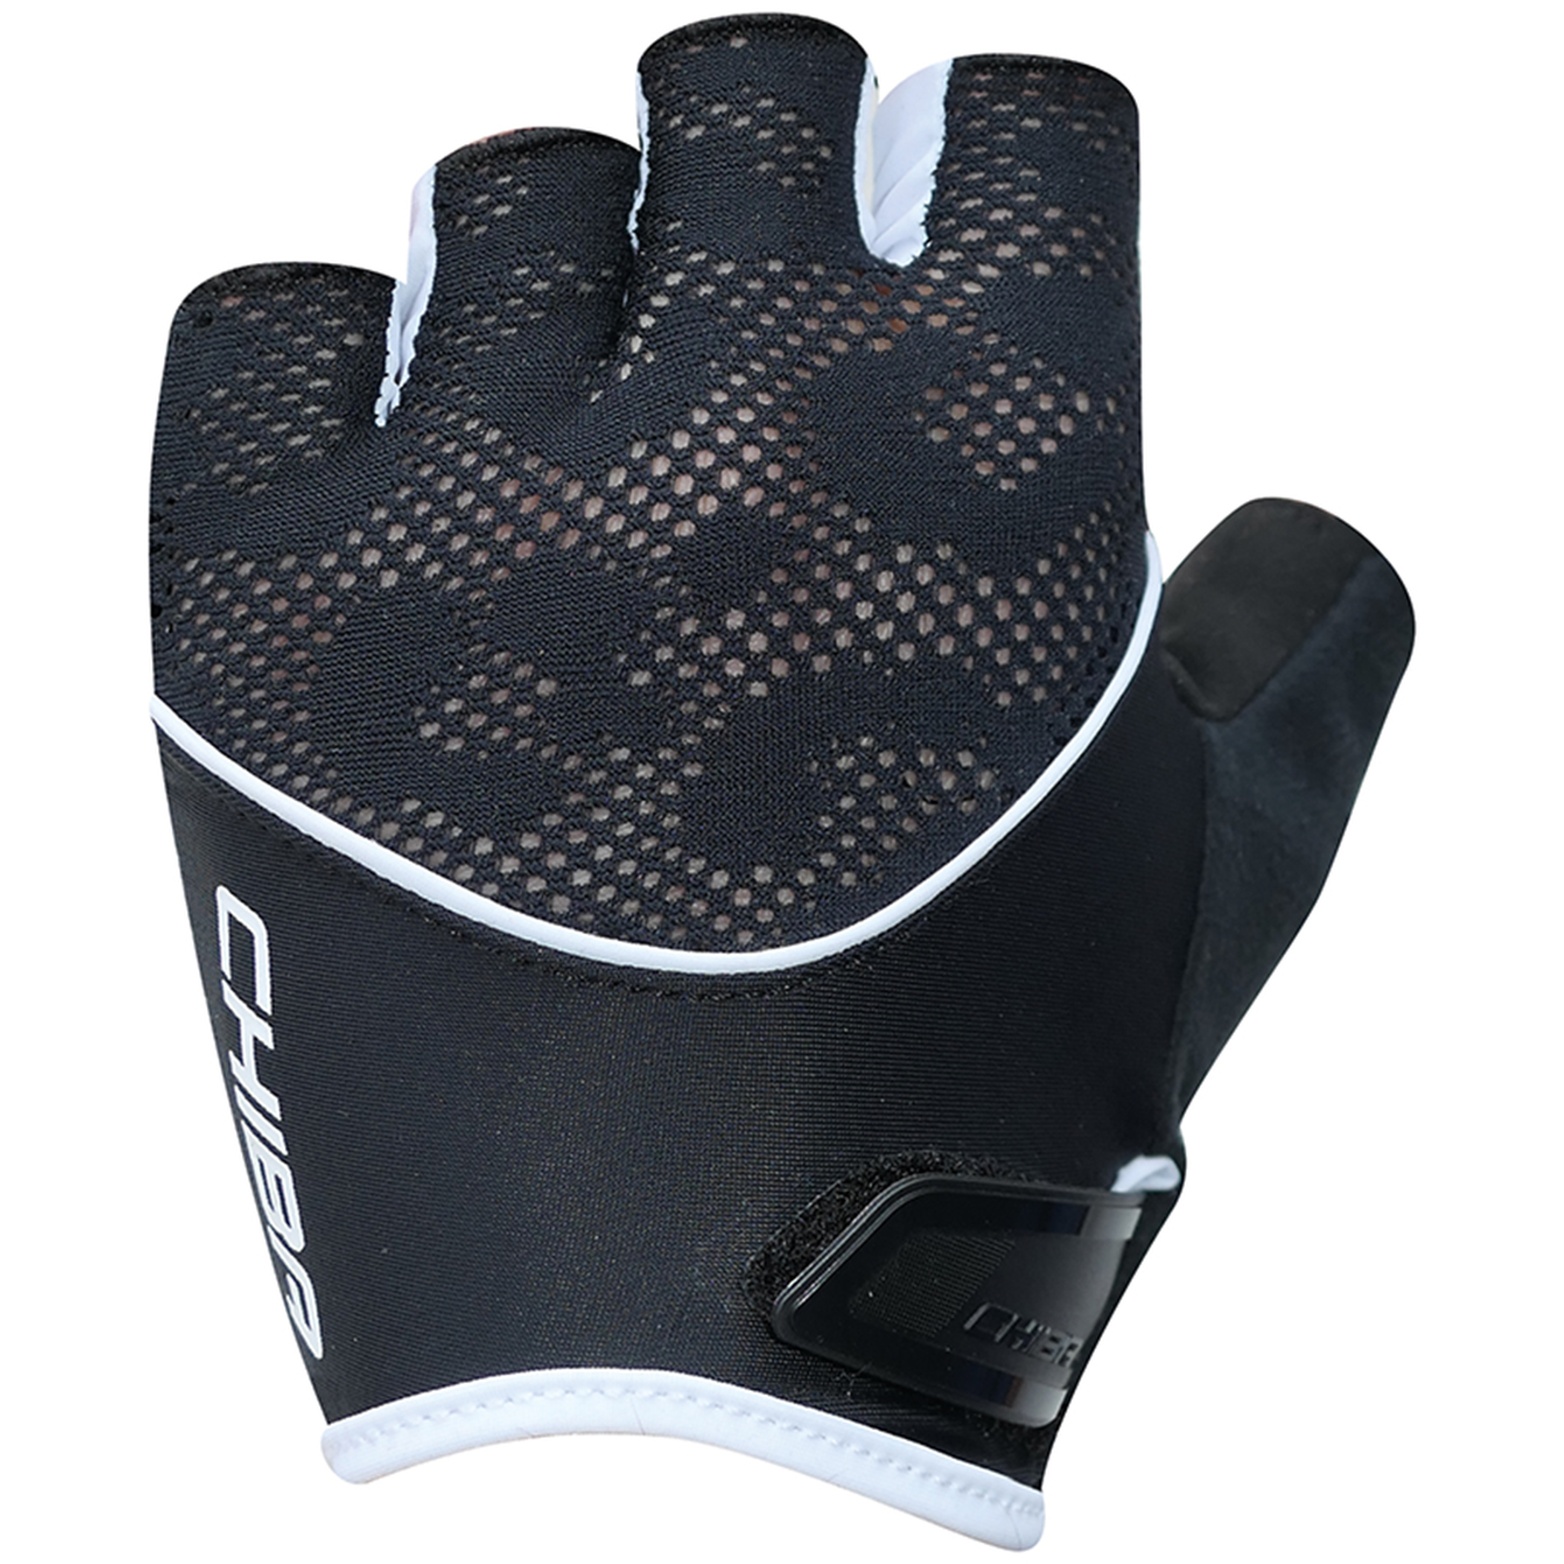 Productfoto van Chiba Gel Handschoenen met Korte Vingers Dame - zwart/wit